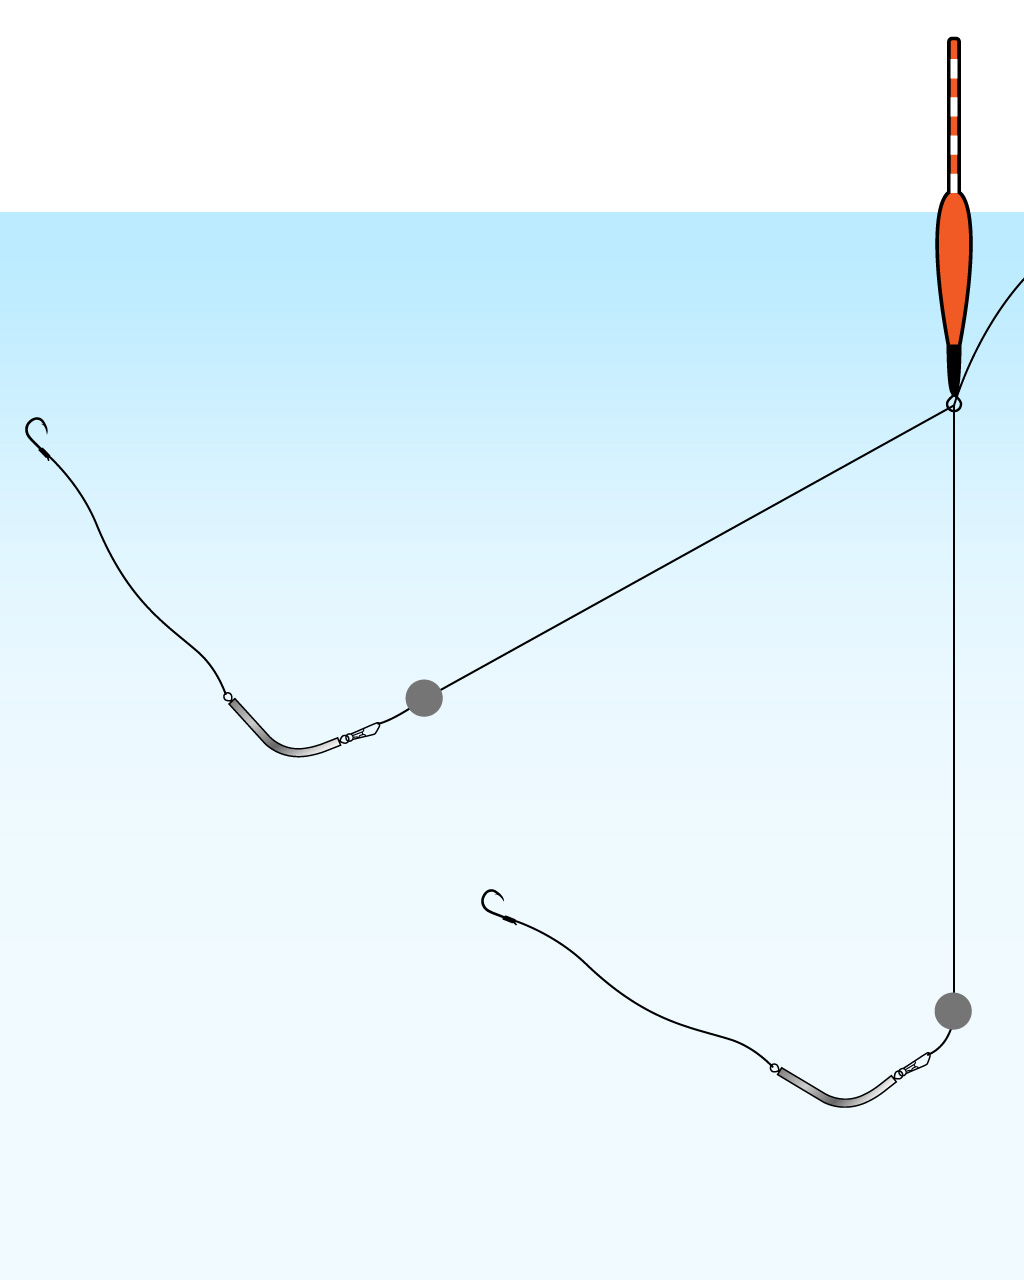 「即掛天秤」を使用した場合の、エサとハリスの動きの例を示したイラスト